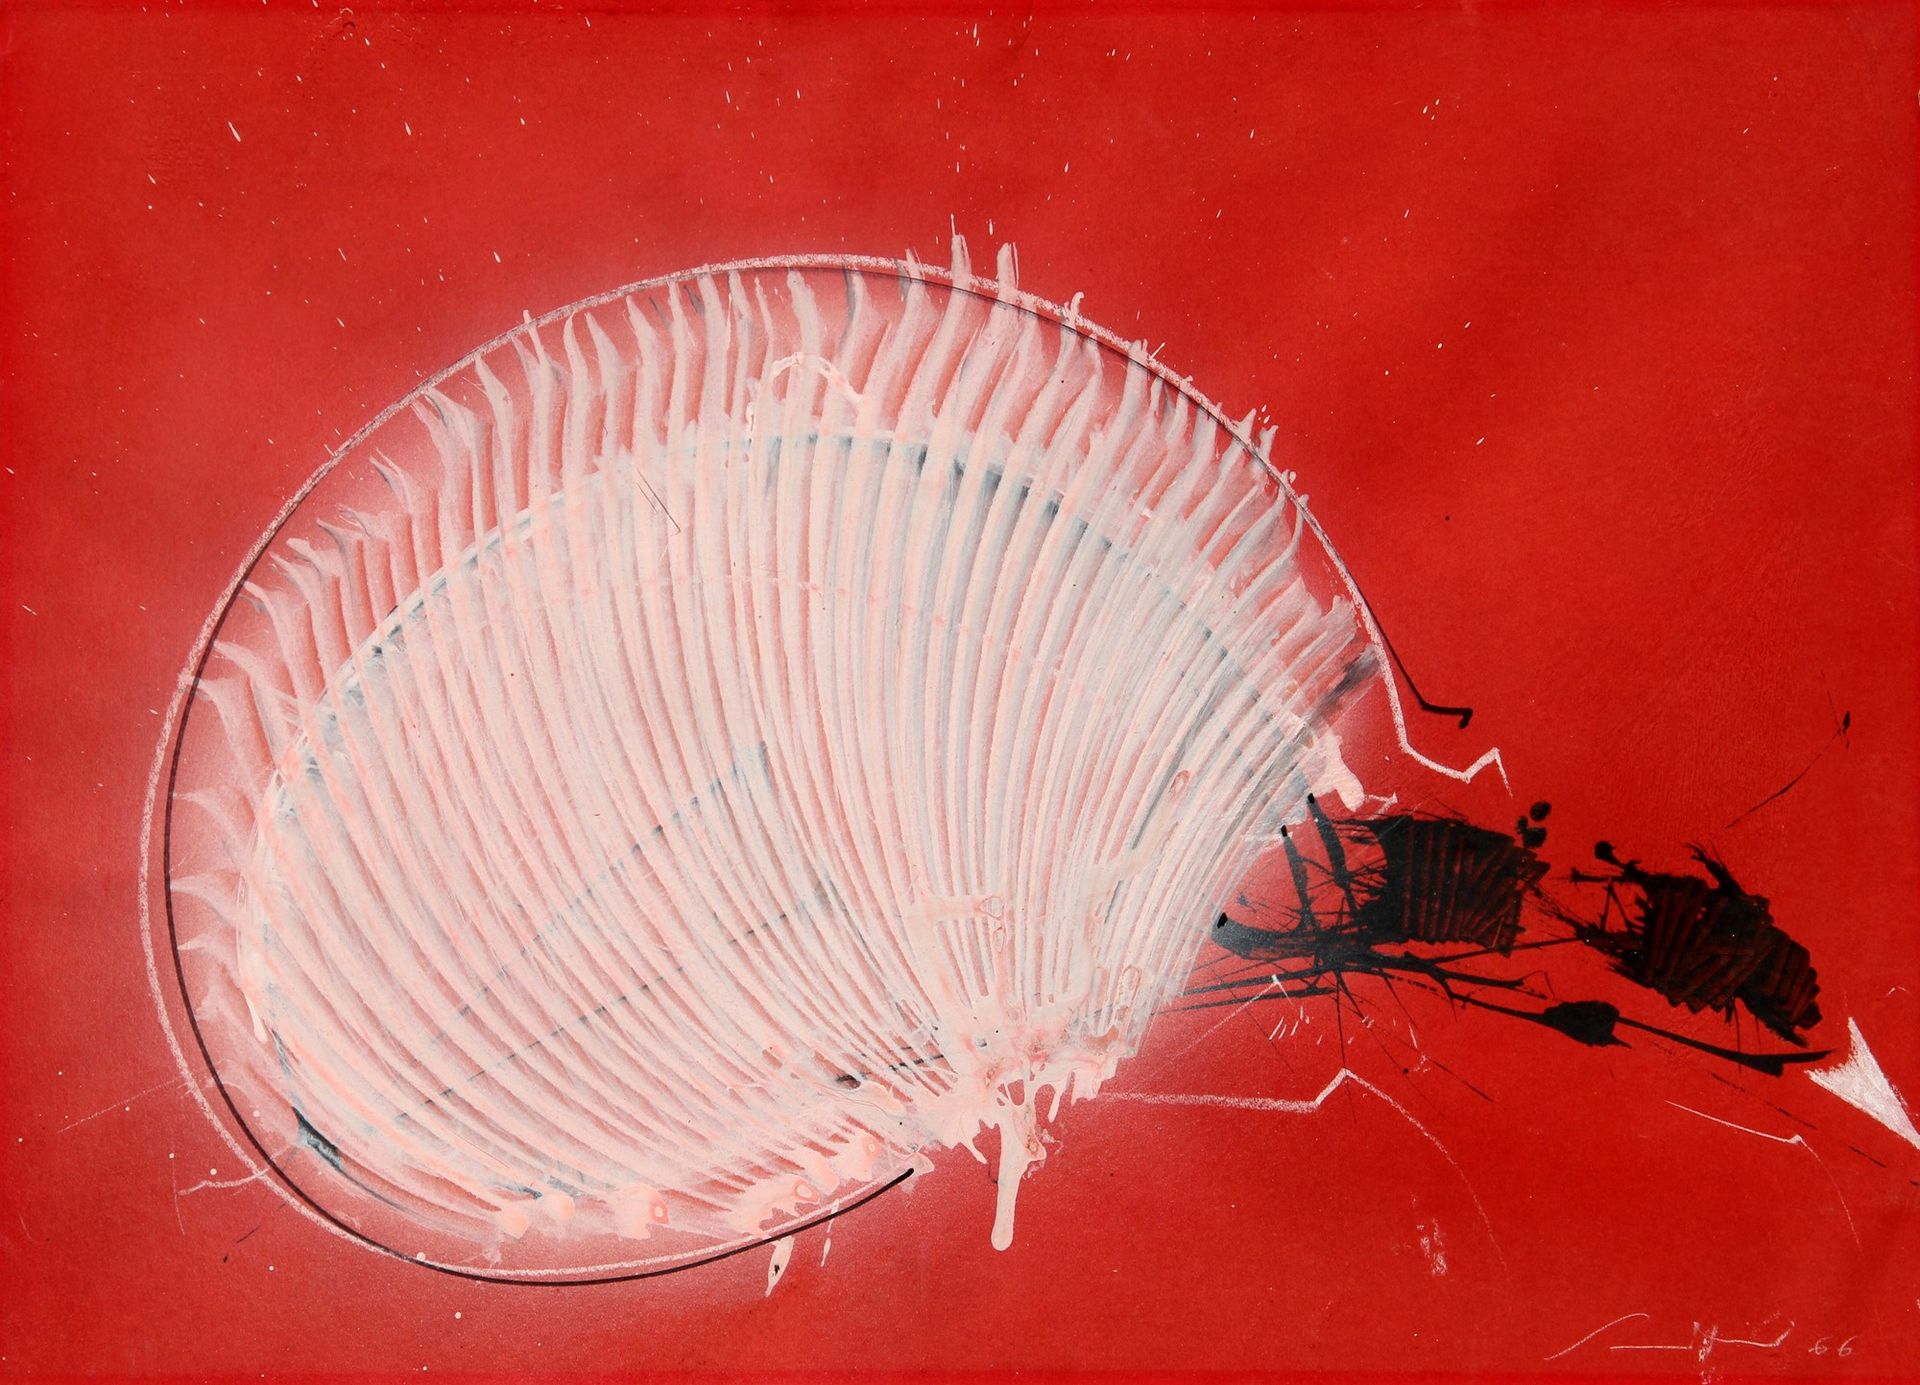 Emilio SCANAVINO Senza titolo 1966, Tempera und Bleistift auf Karton, cm. 50x70
&hellip;